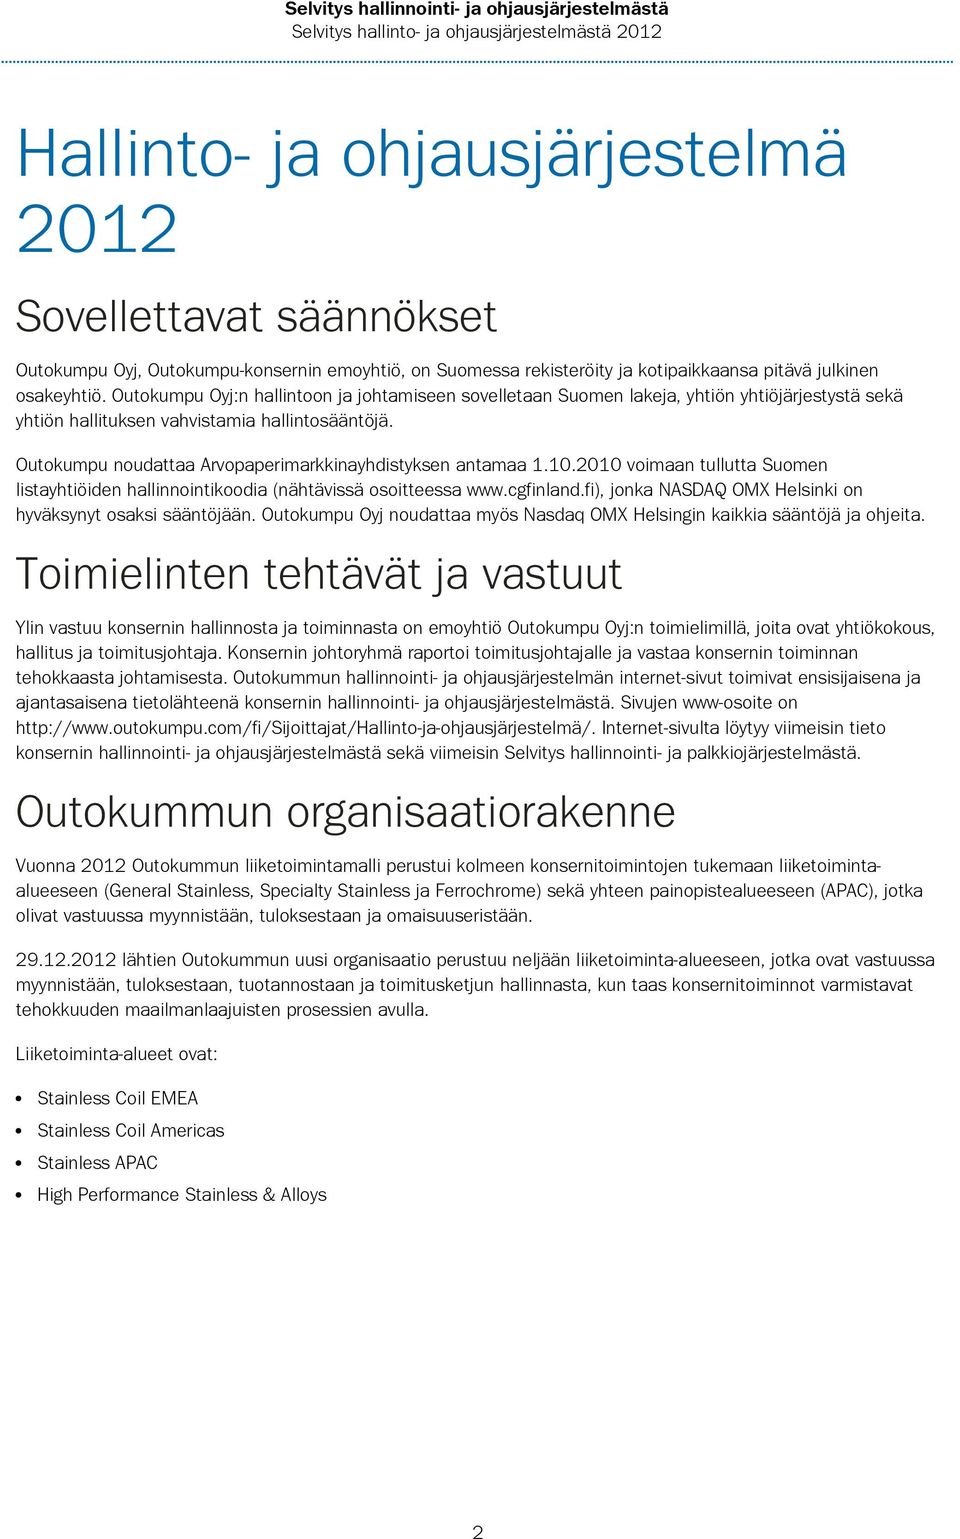 Outokumpu noudattaa Arvopaperimarkkinayhdistyksen antamaa 1.10.2010 voimaan tullutta Suomen listayhtiöiden hallinnointikoodia (nähtävissä osoitteessa www.cgfinland.